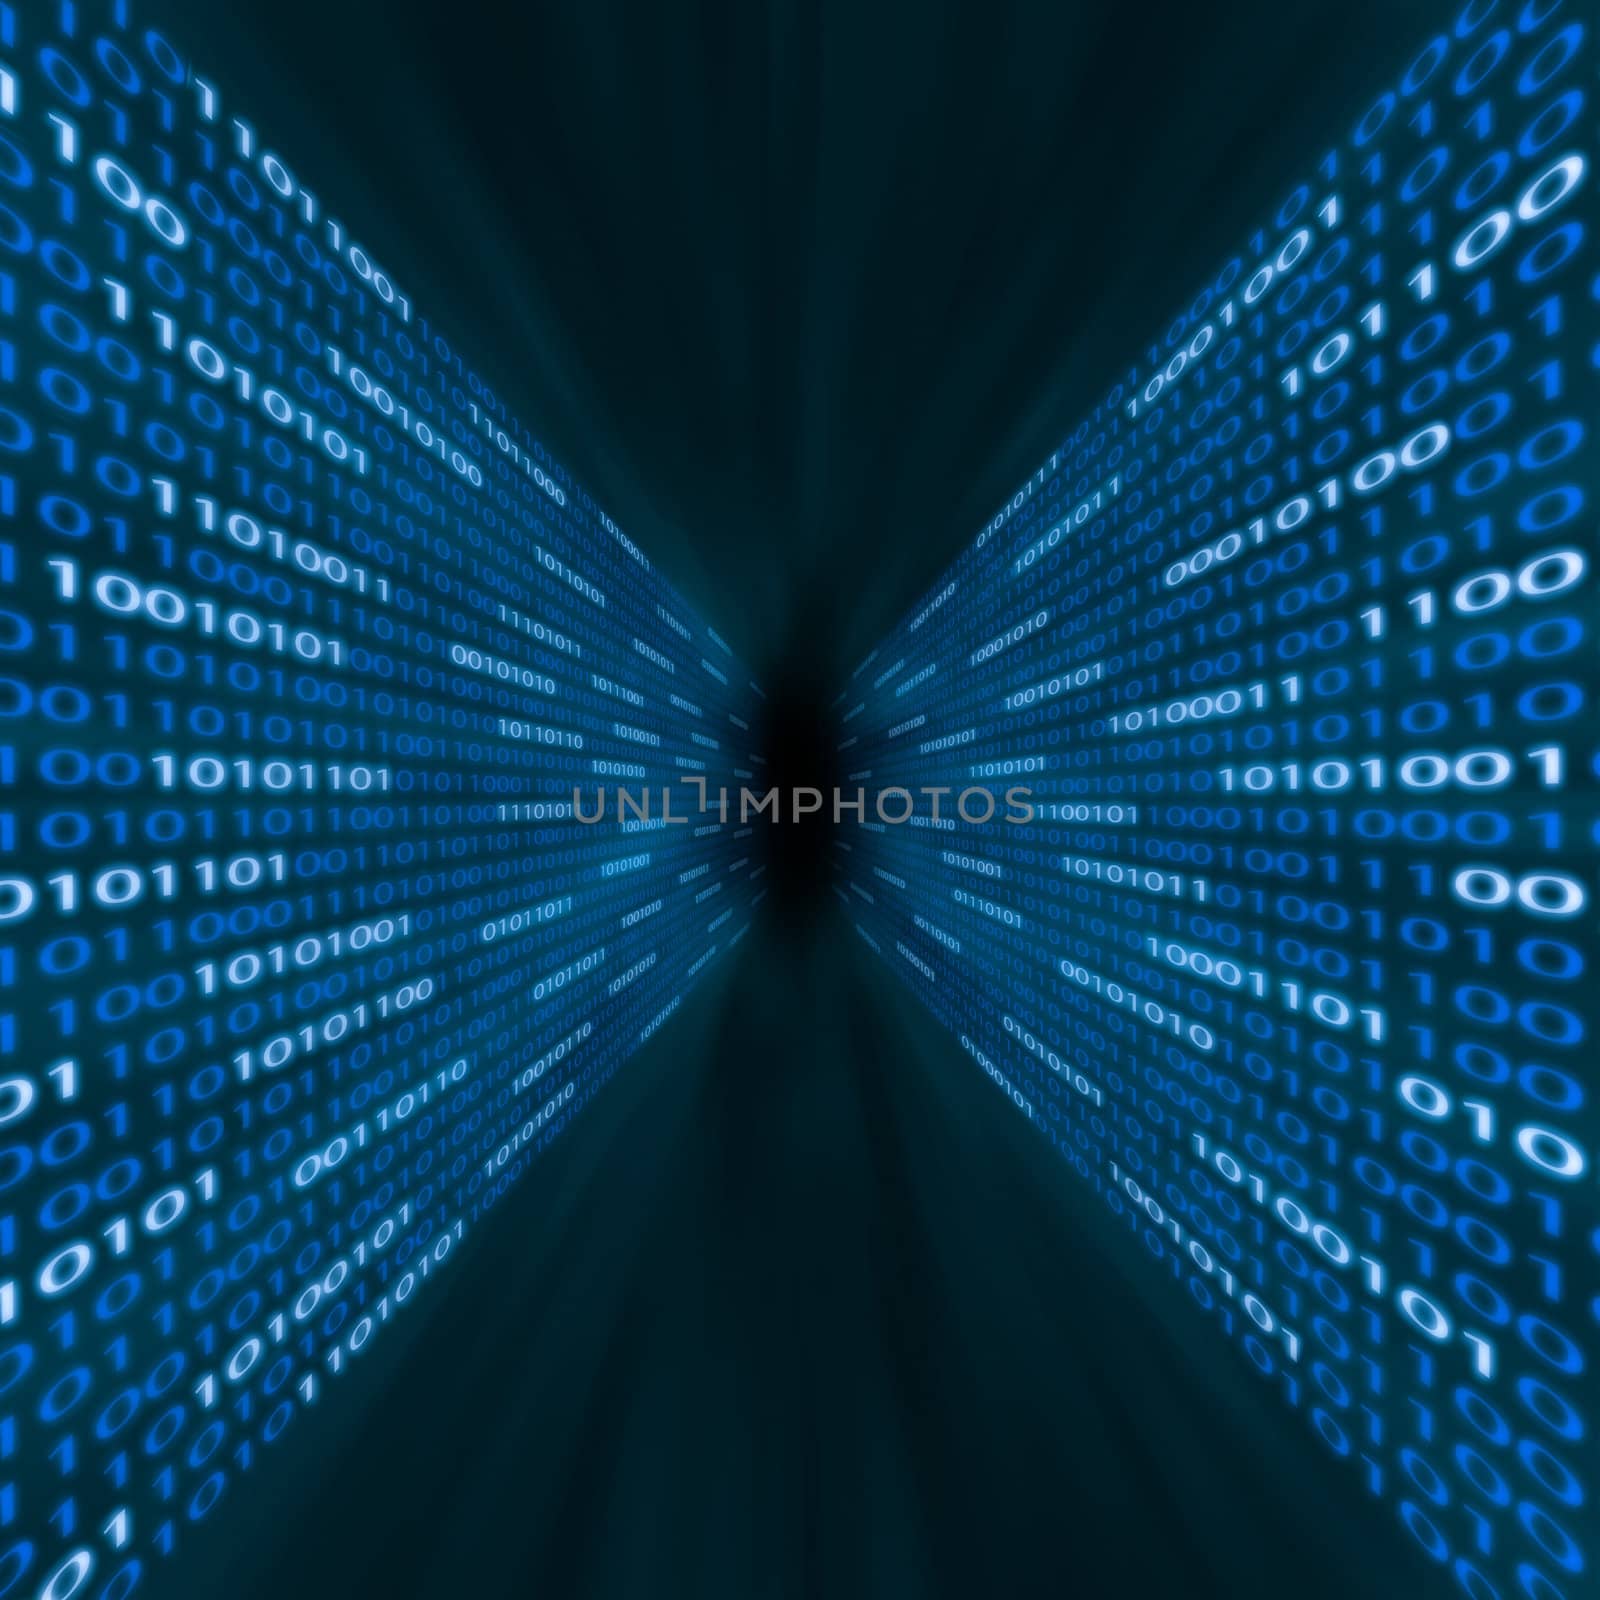 Corridor of blue binary code flowing into a vortex